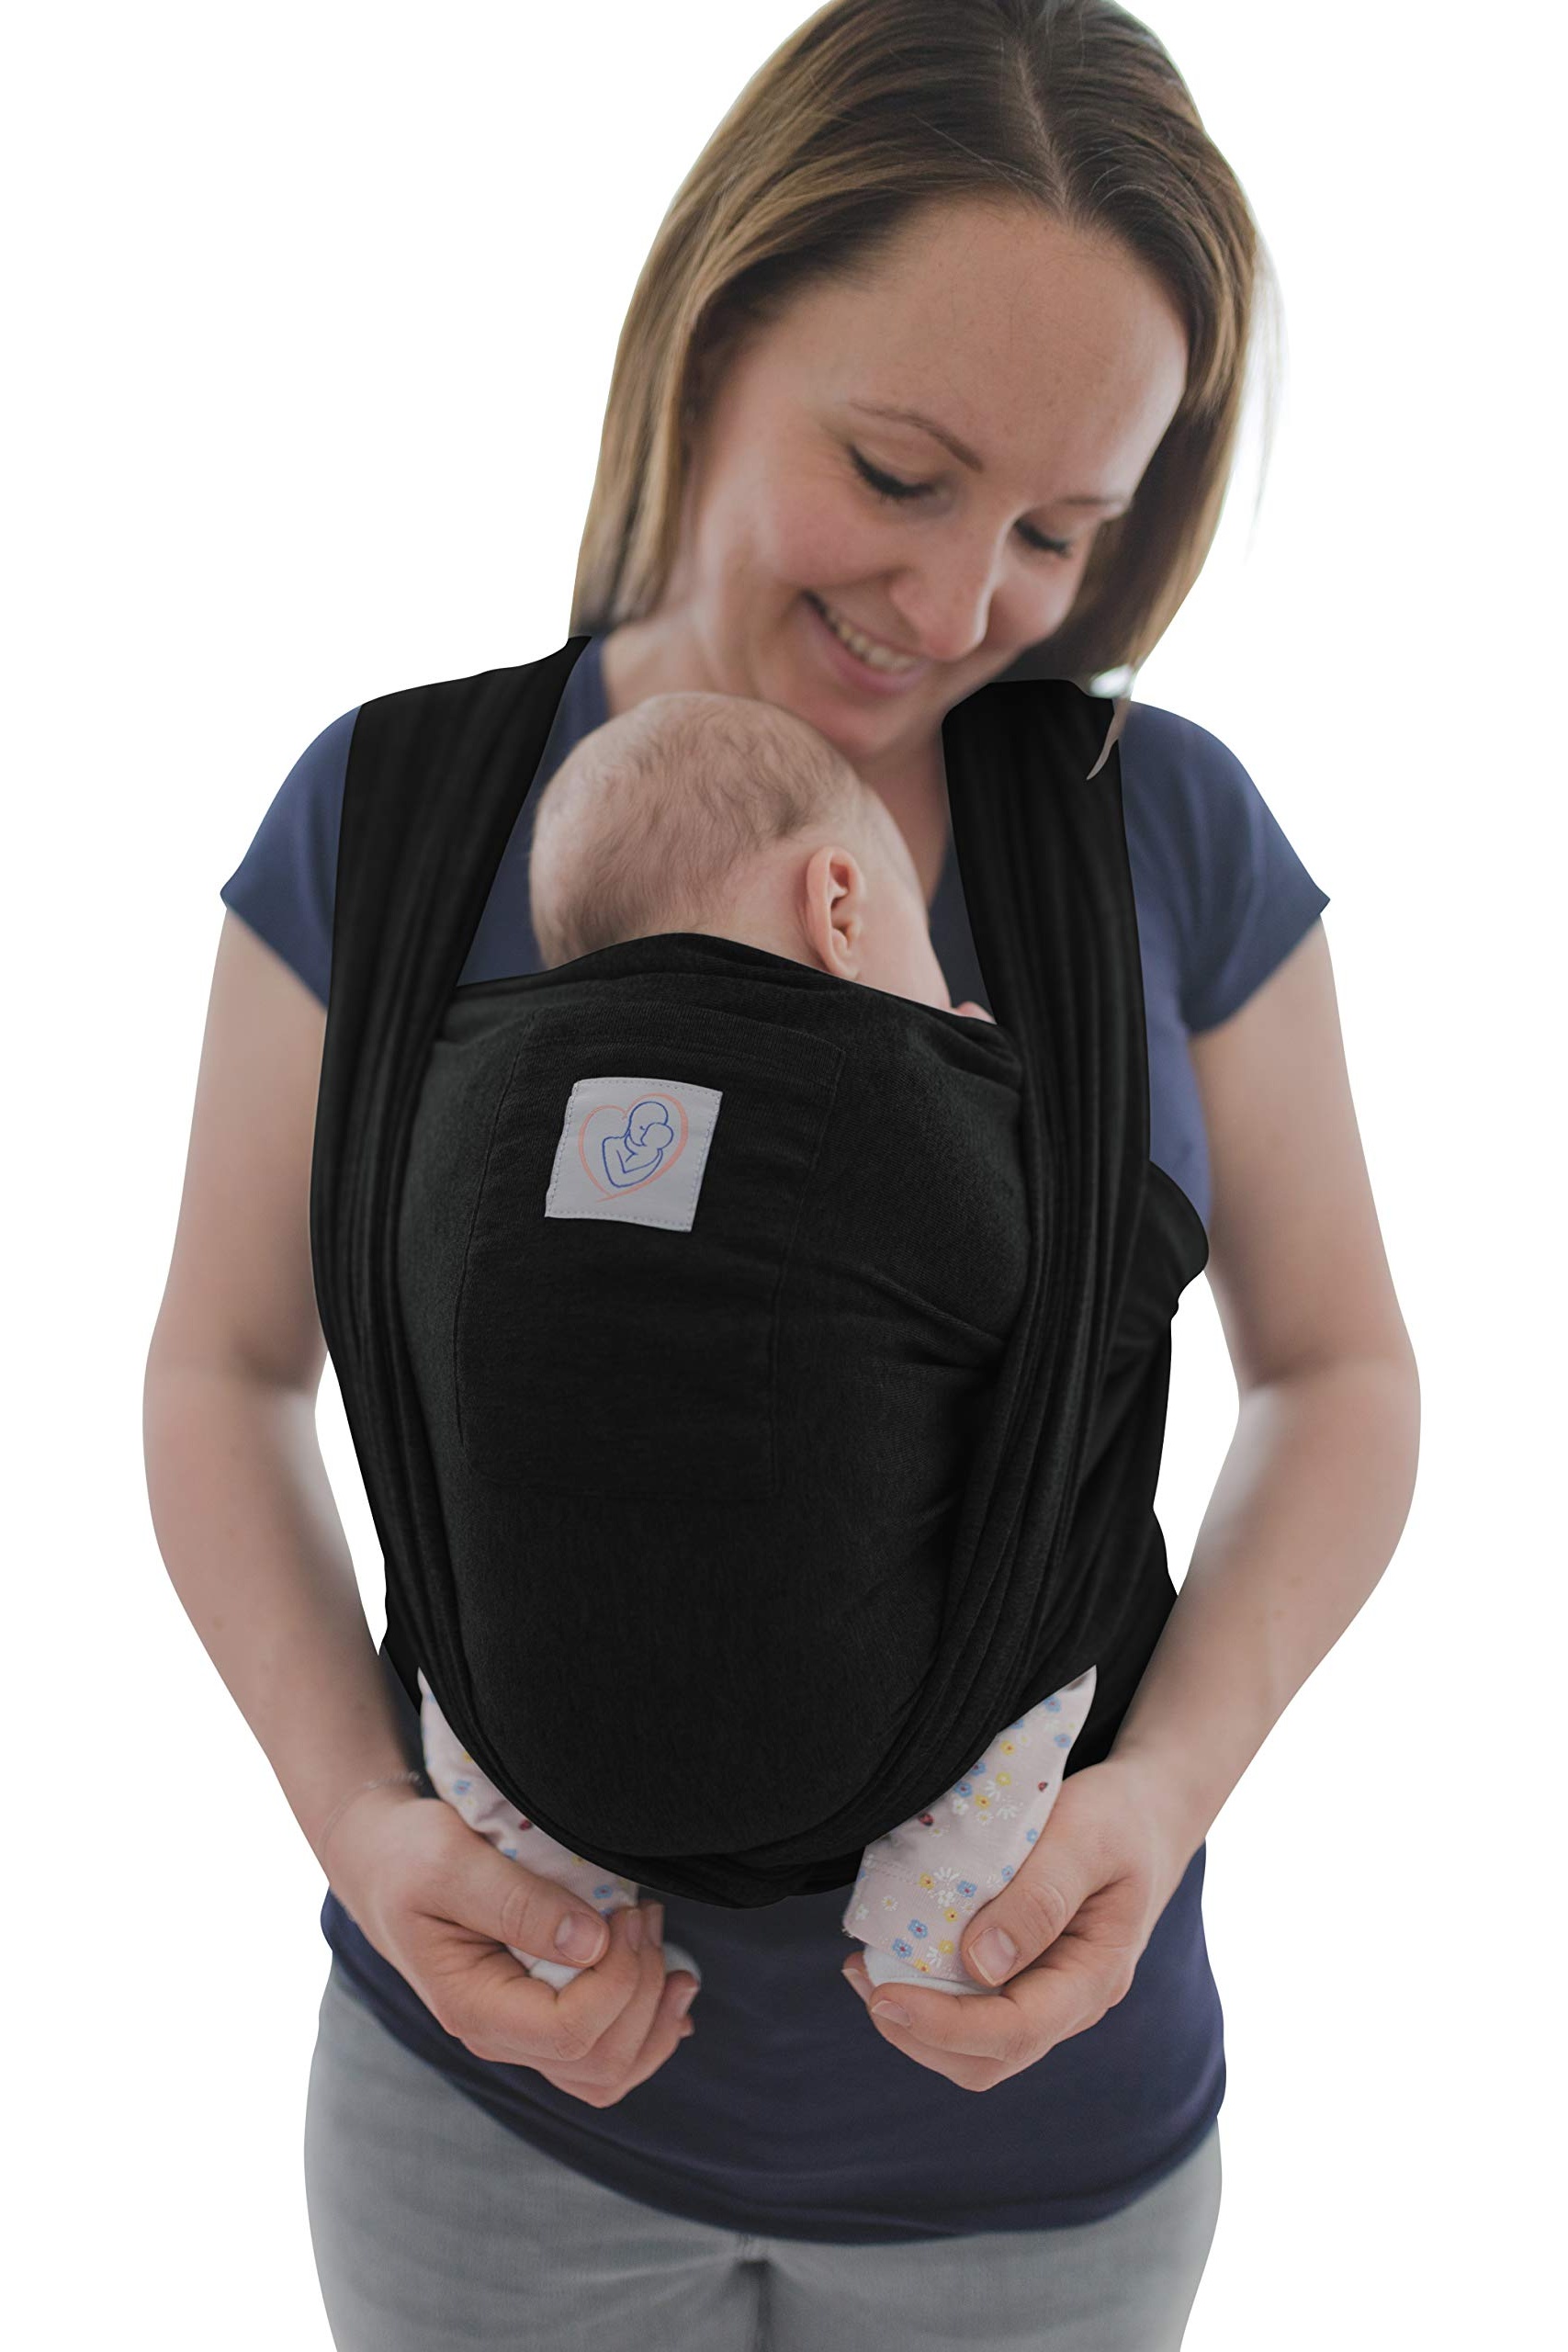 Bild von Babytragetuch mit Vordertasche inkl. Baby Wrap Carrier Tasche und Anleitung - langes elastisches Tragetuch für Früh- und Neugeborene Kleinkinder (Schwarz)